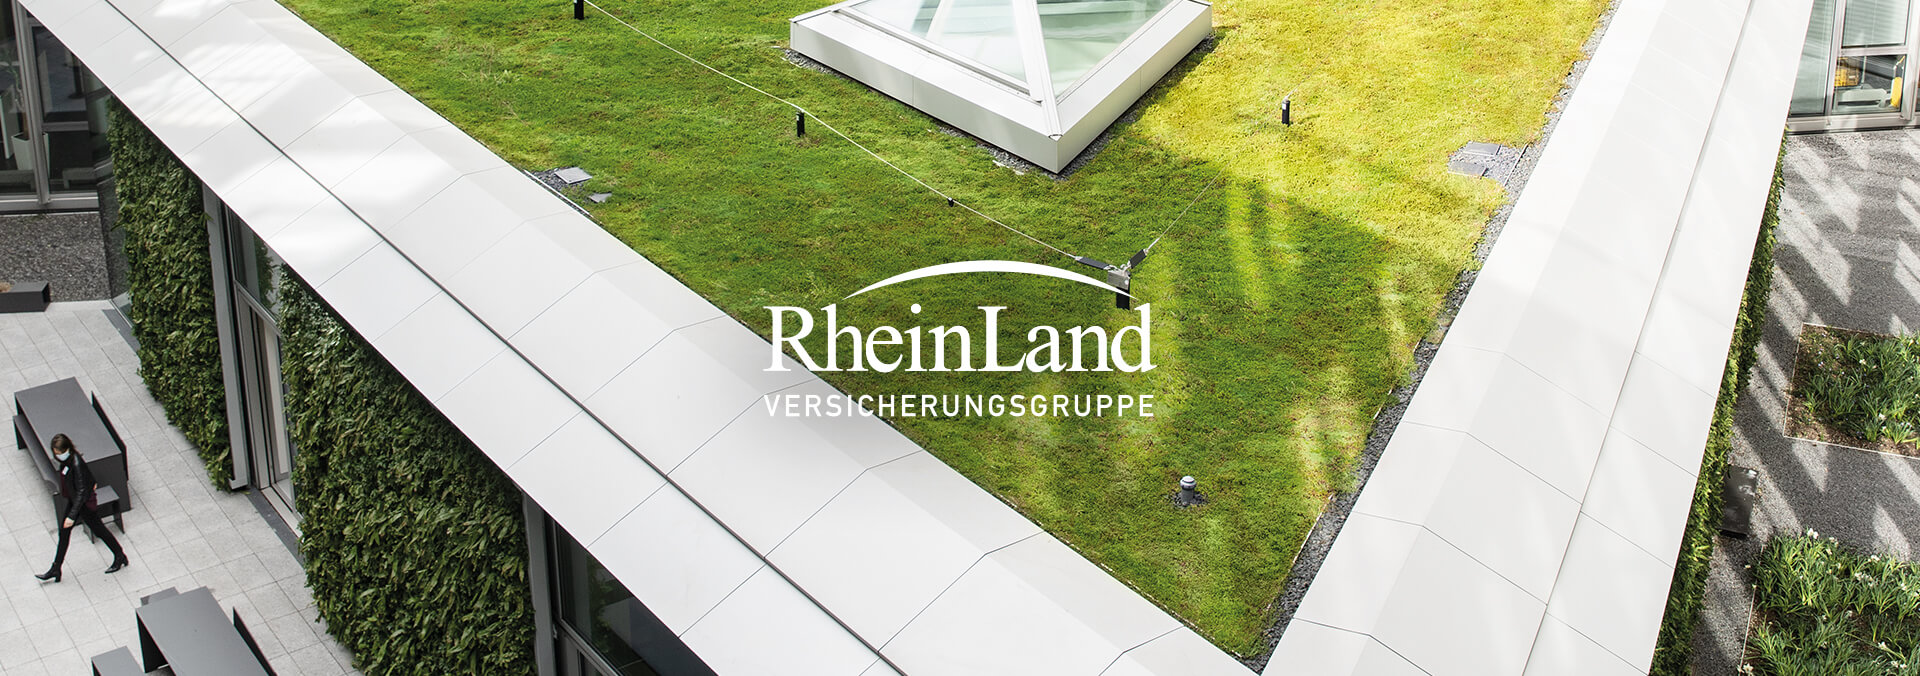 RheinLand Versicherungsgruppe Header